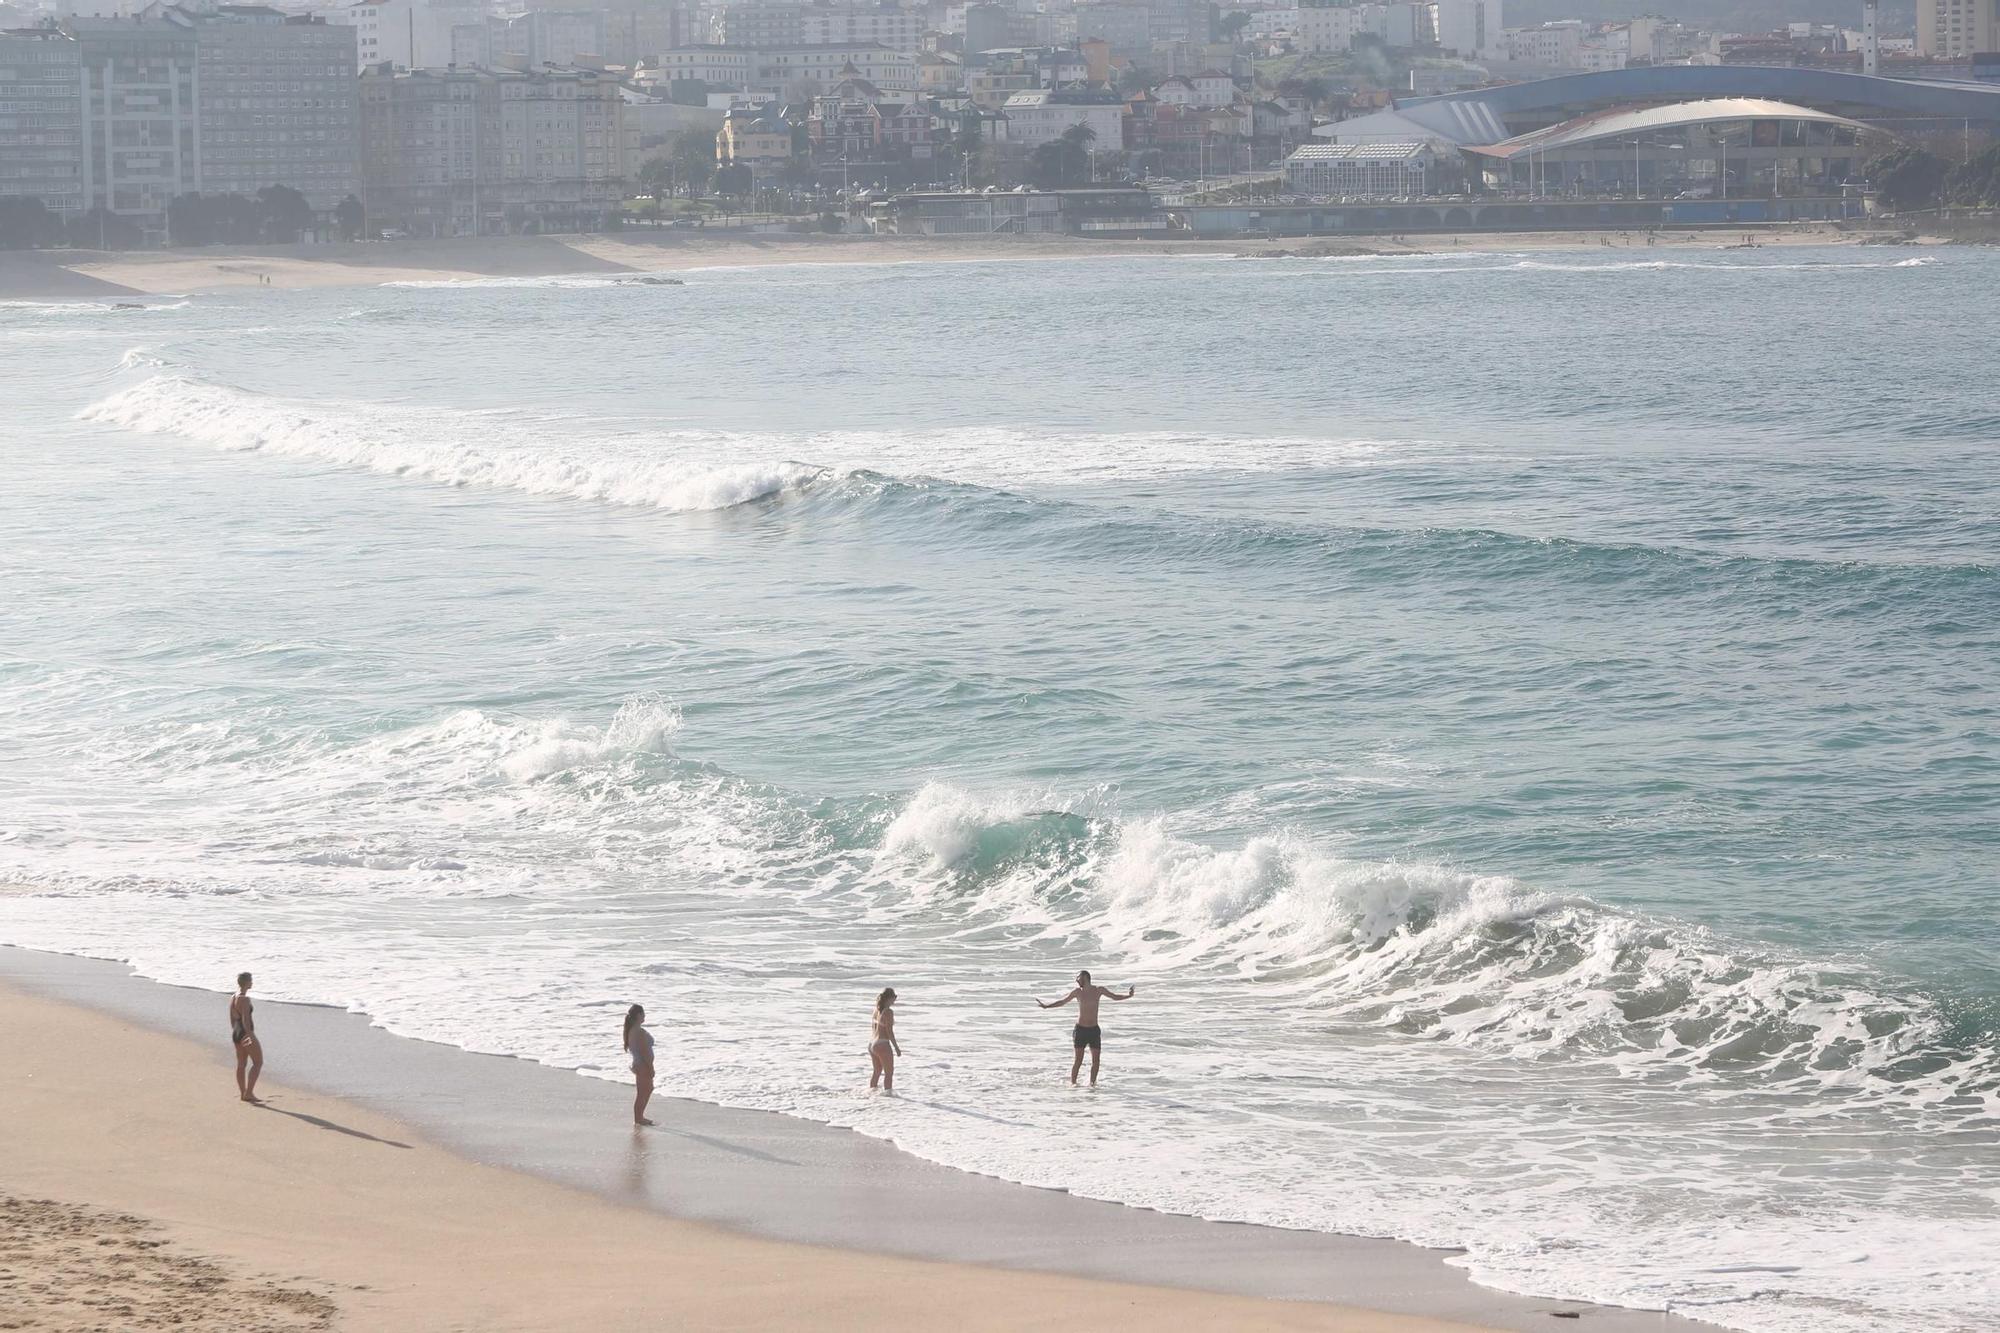 Primeros baños en las playas de A Coruña, donde el termómetro llega casi a los 20 grados